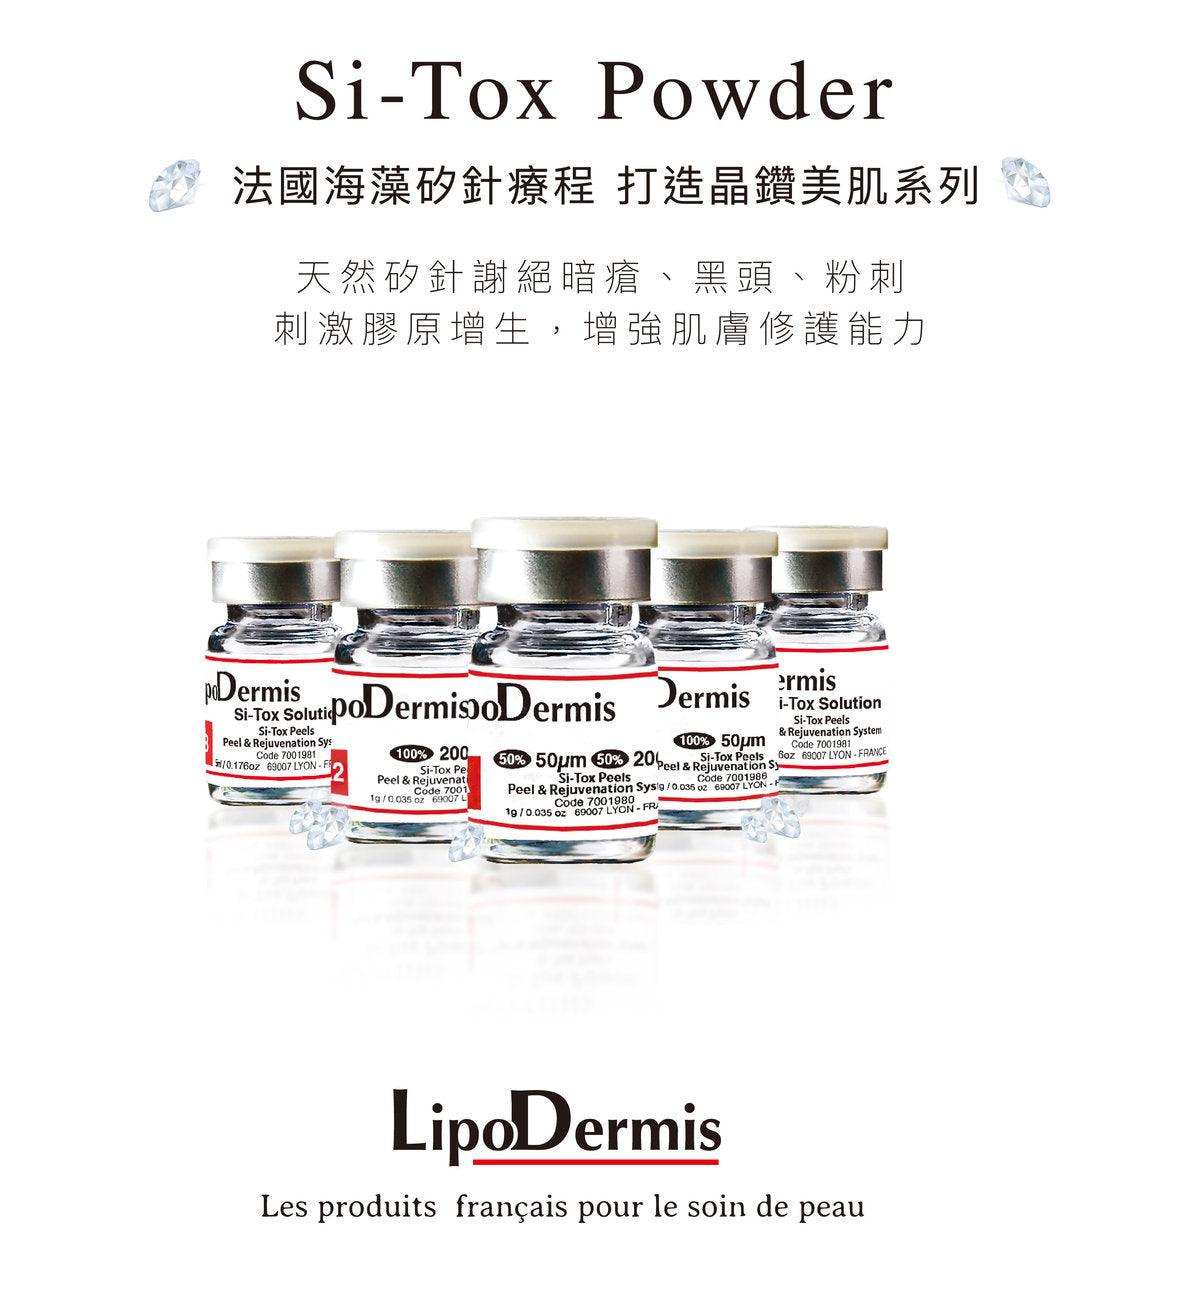 Lipo dermis矽針 陶瓷肌Lipodermis 海藻矽針 Si-Tox Peels - Peel & Rejuvenation TA/TA2/TA3 - Beauty’s 5skin 